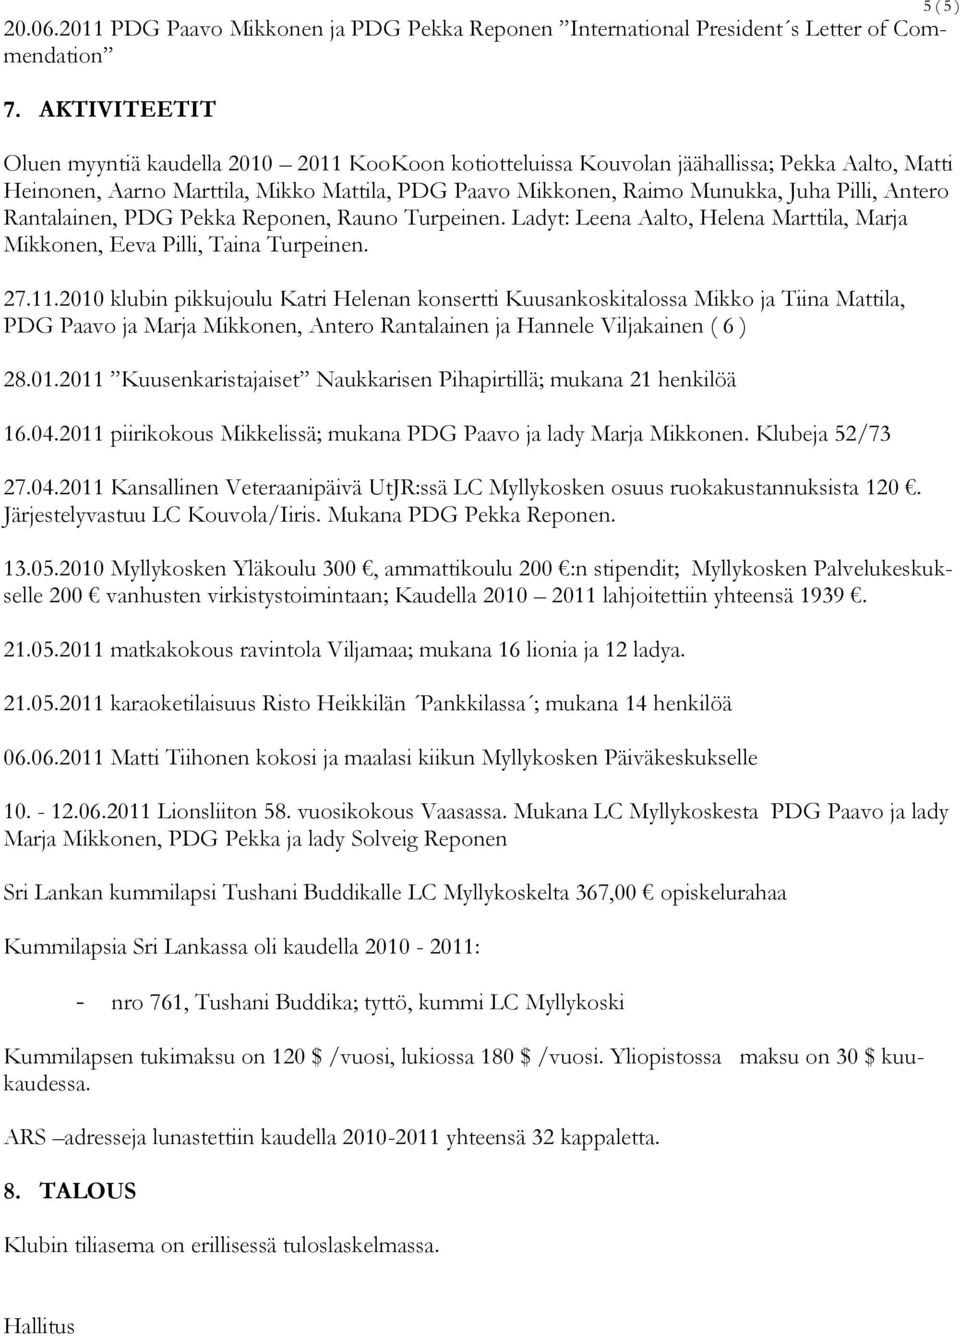 Antero Rantalainen, PDG Pekka Reponen, Rauno Turpeinen. Ladyt: Leena Aalto, Helena Marttila, Marja Mikkonen, Eeva Pilli, Taina Turpeinen. 27.11.